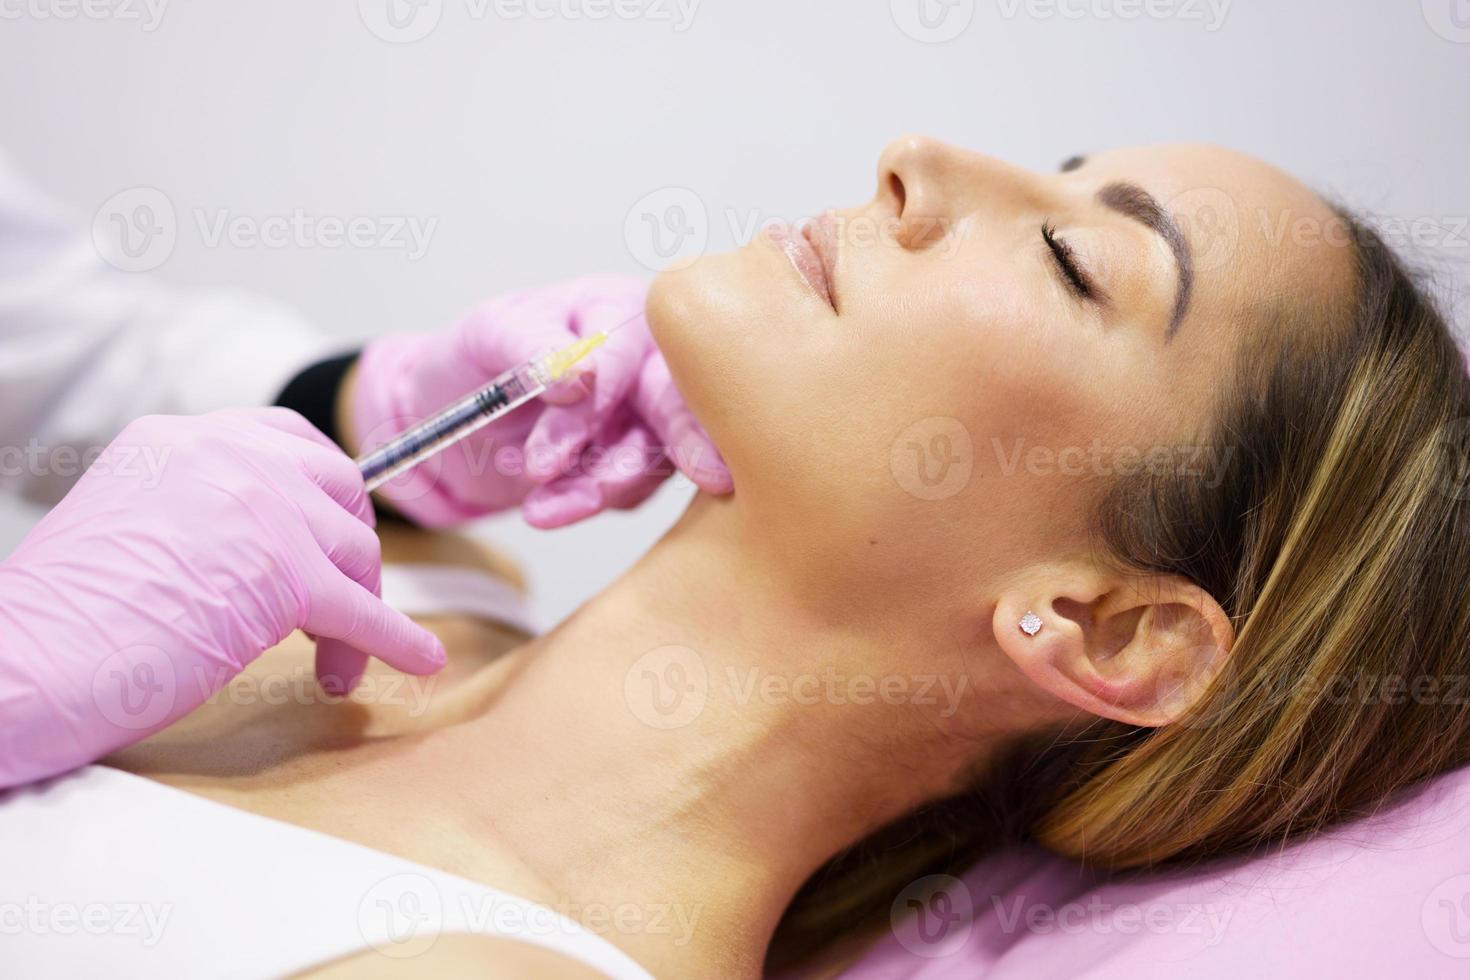 médico injetando ácido hialurônico no ching de uma mulher como tratamento de rejuvenescimento facial. foto